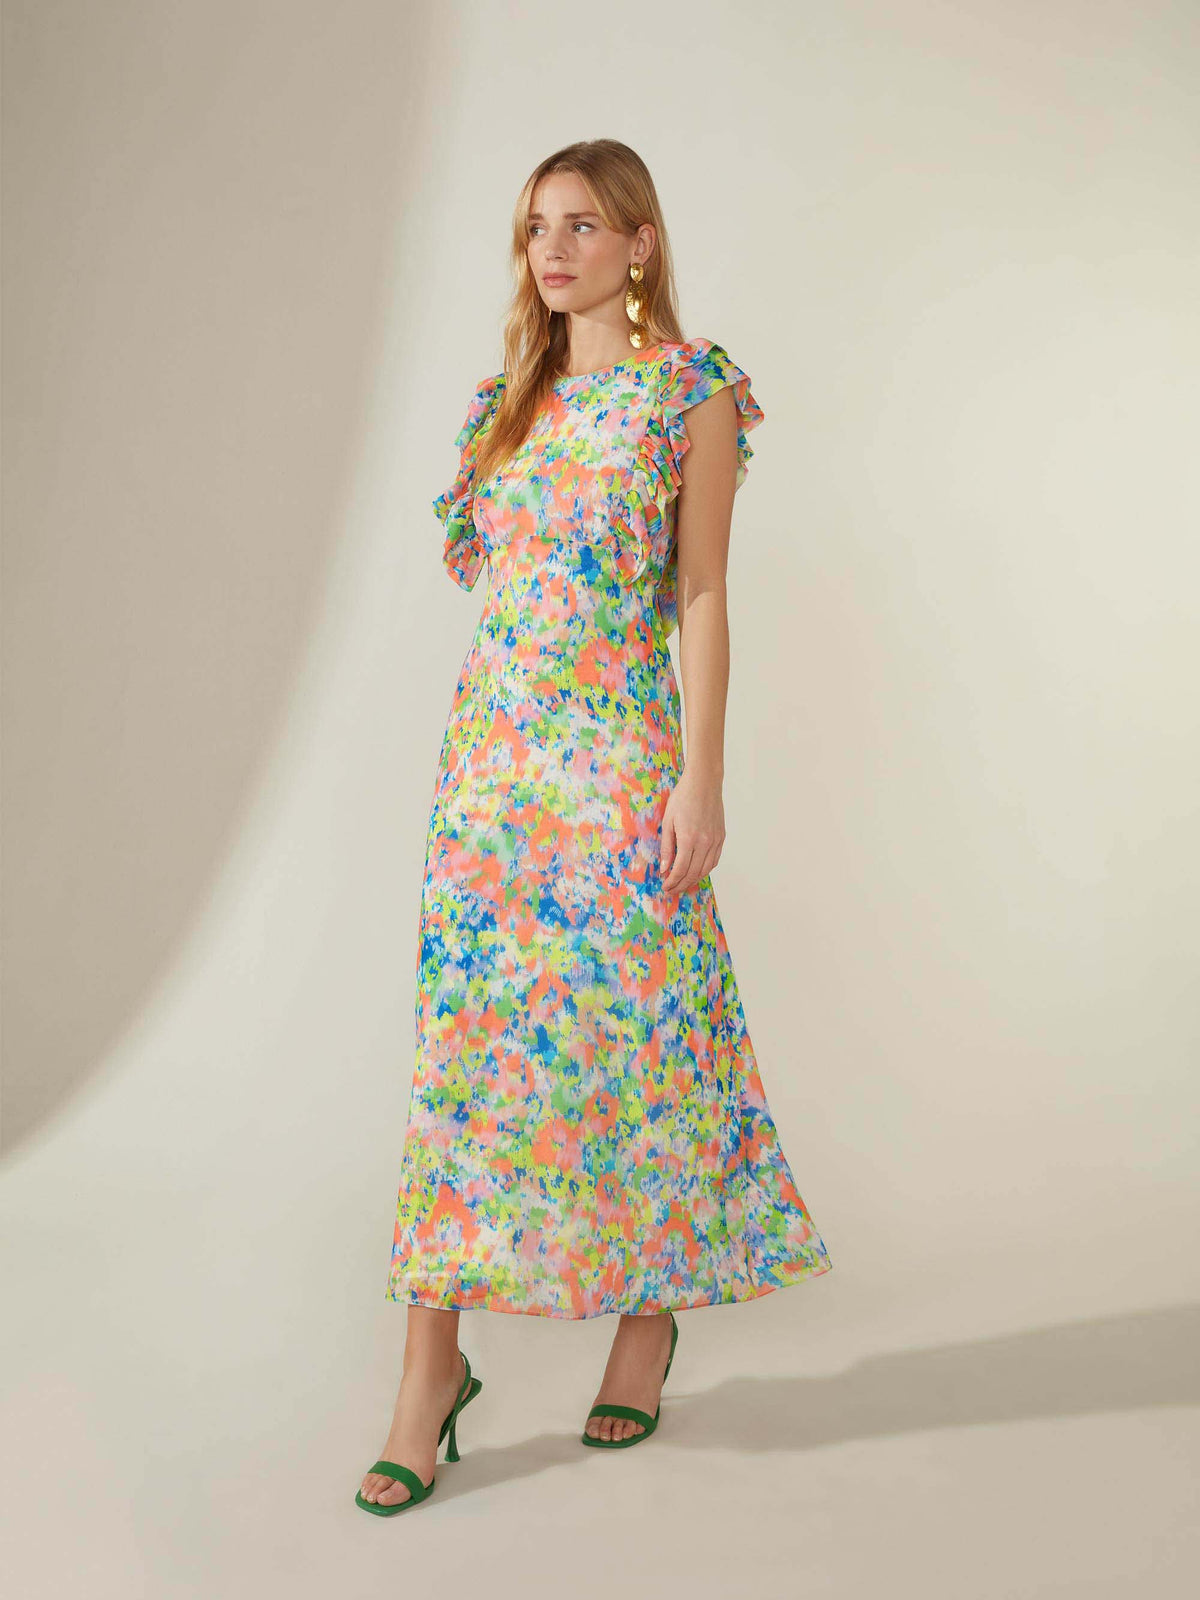 Elsie Blurred Floral Frill Midi Dress